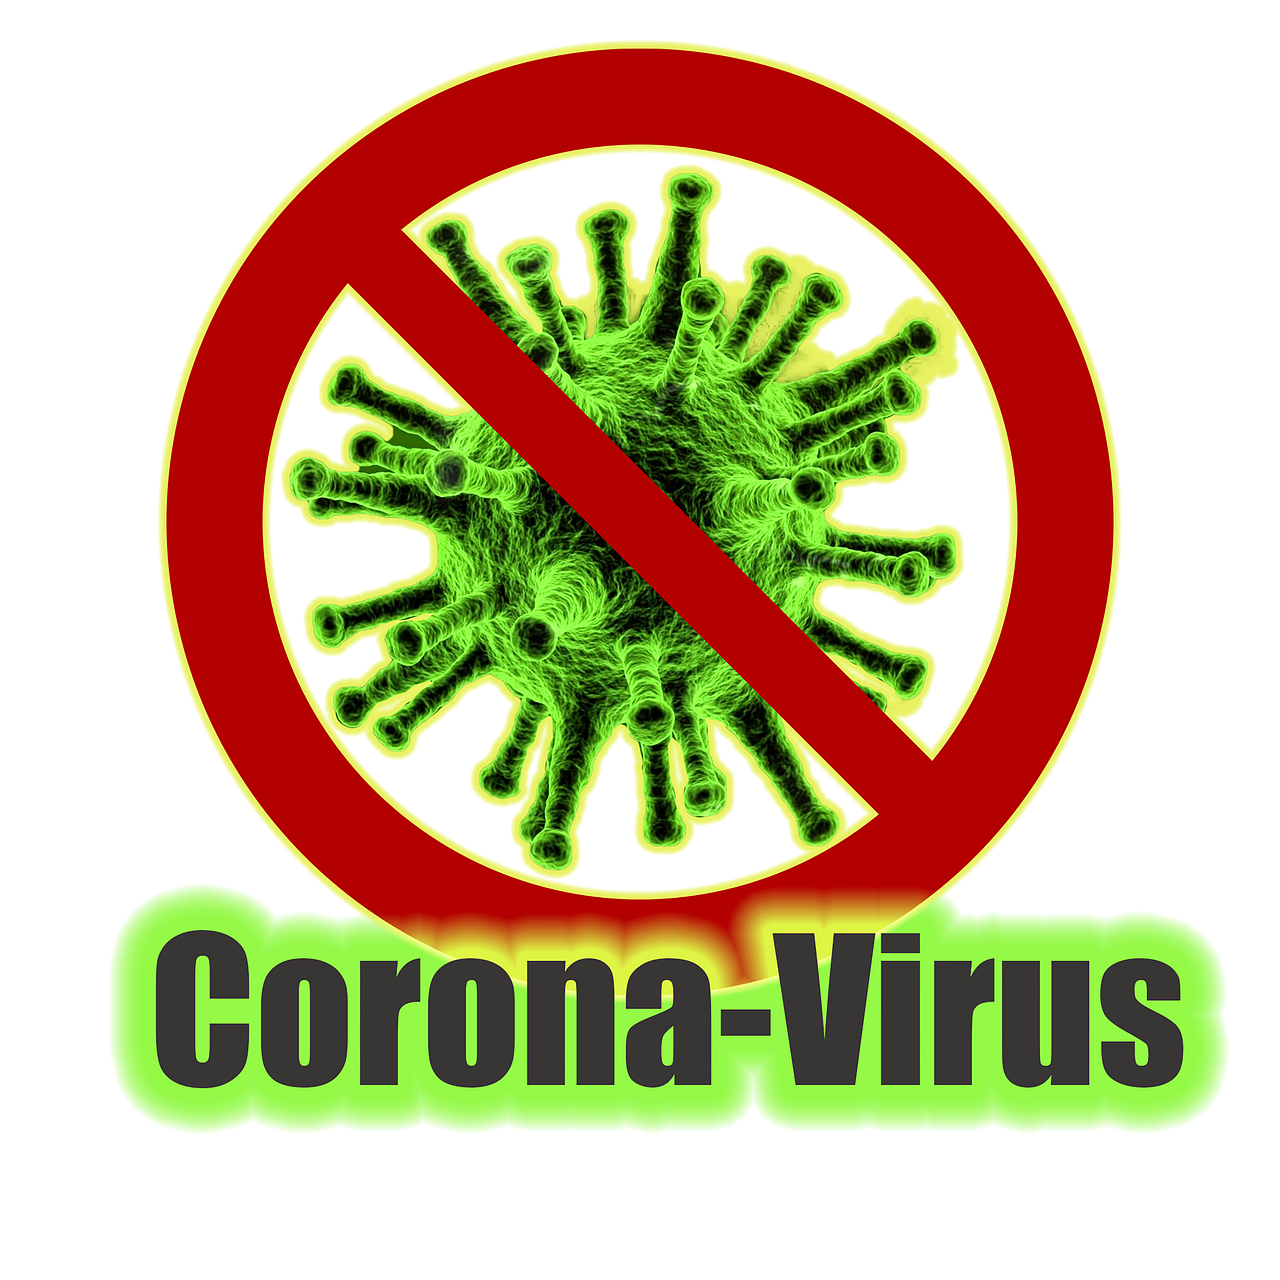 Image of coronavirus ban during 2021 housing market.